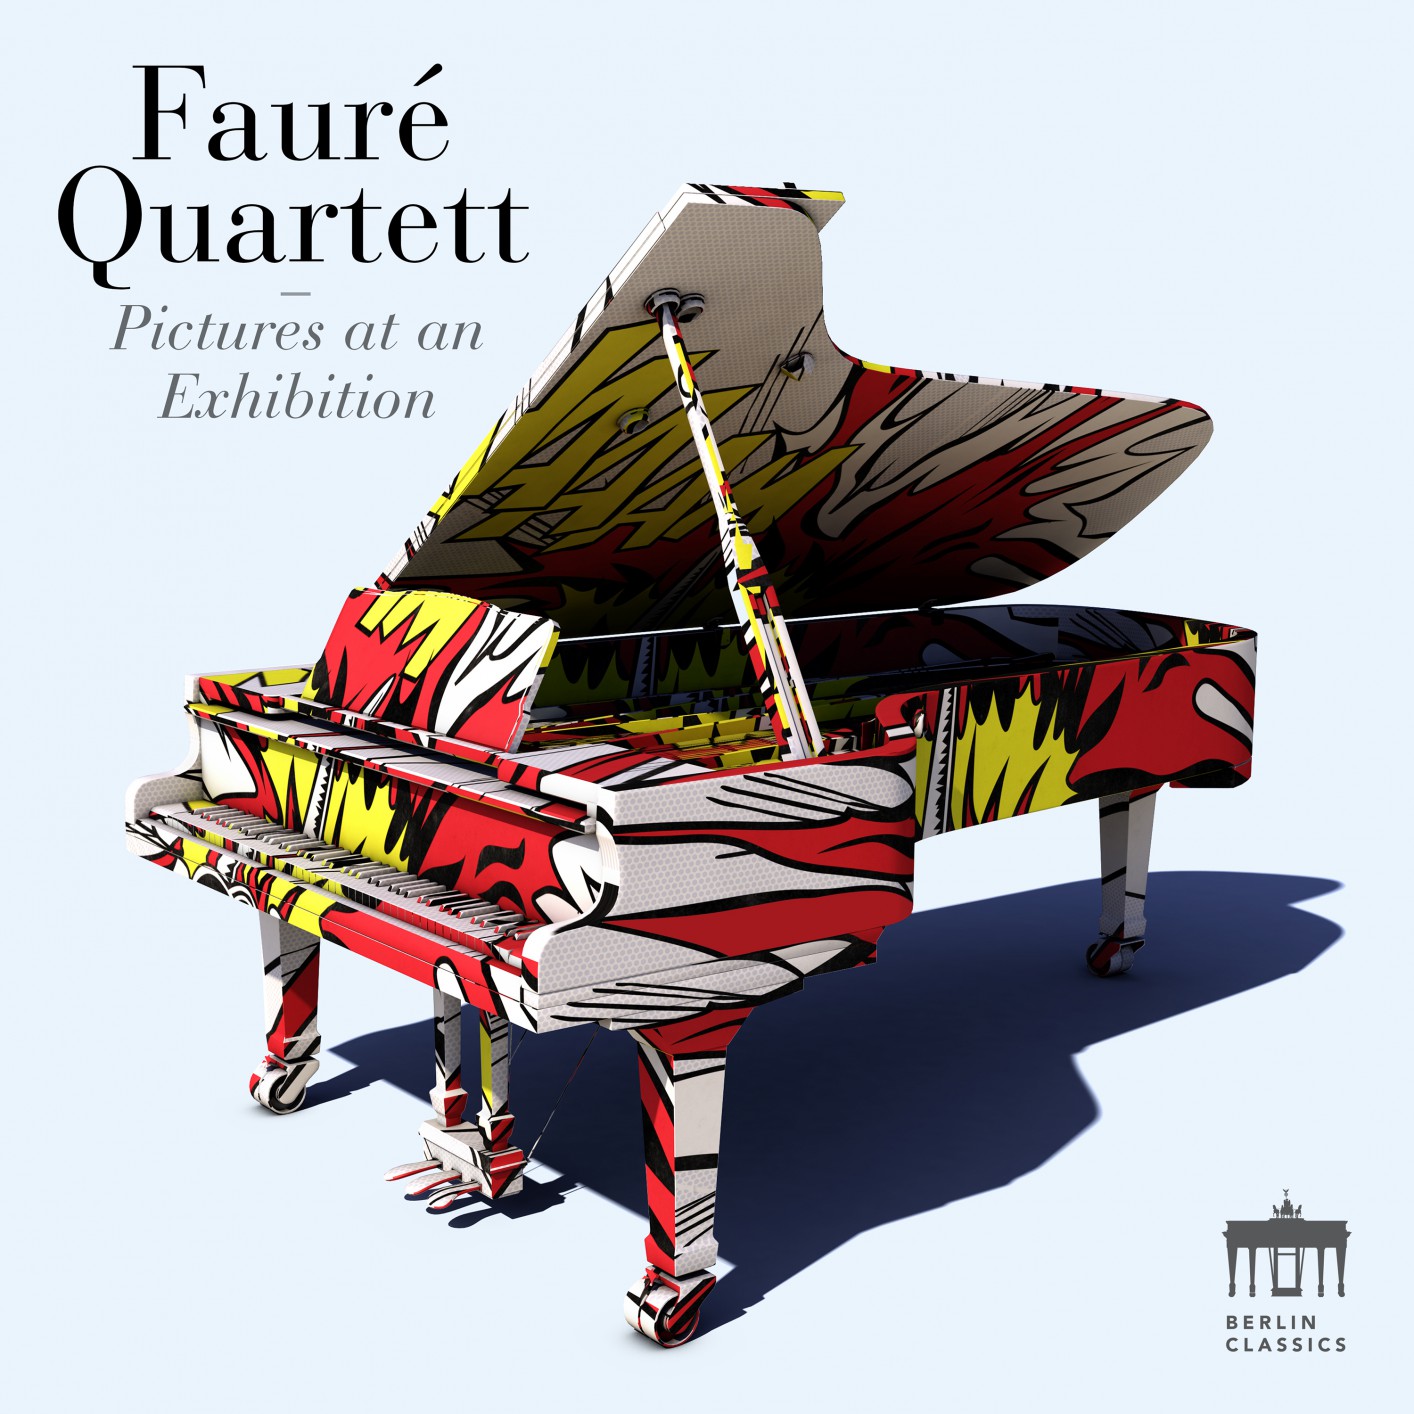 Faure Quartett - Rachmaninov Etudes-Tableaux - Mussorgsky Pictures at an Exhibition (2018) [FLAC 24bit/96kHz]